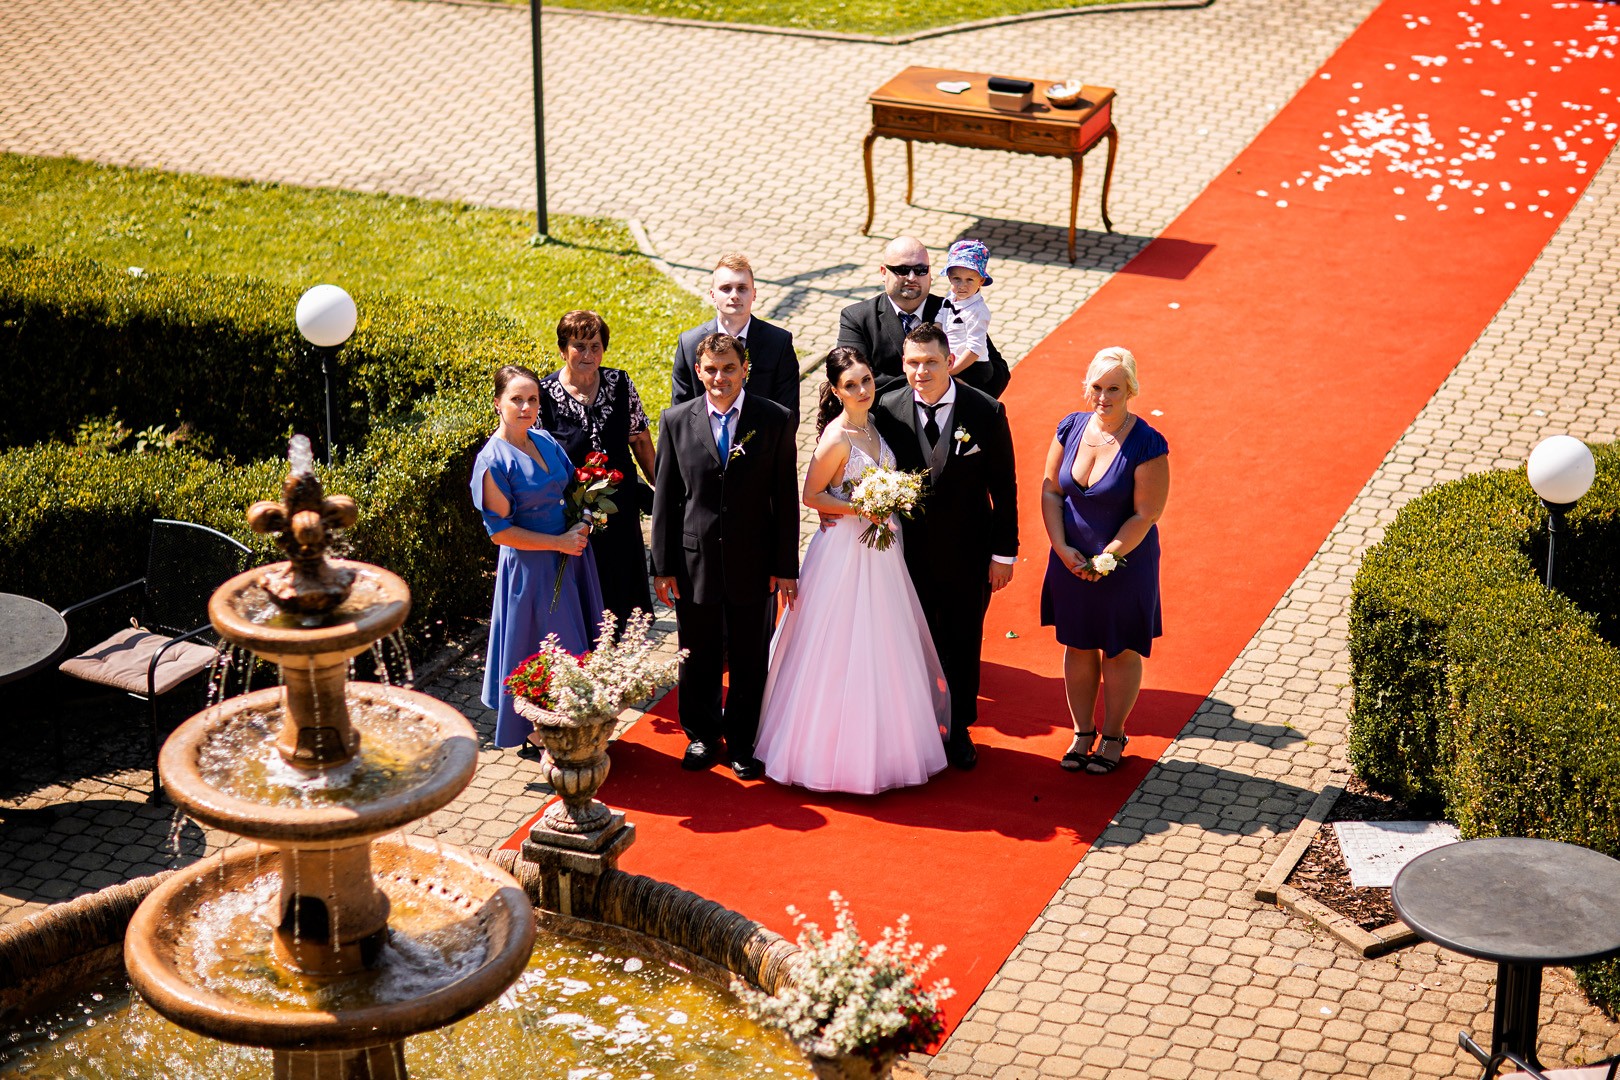 Picturesque dream wedding of Kloudy & Michal in Hluboká nad Vltavou. - 0221.jpg